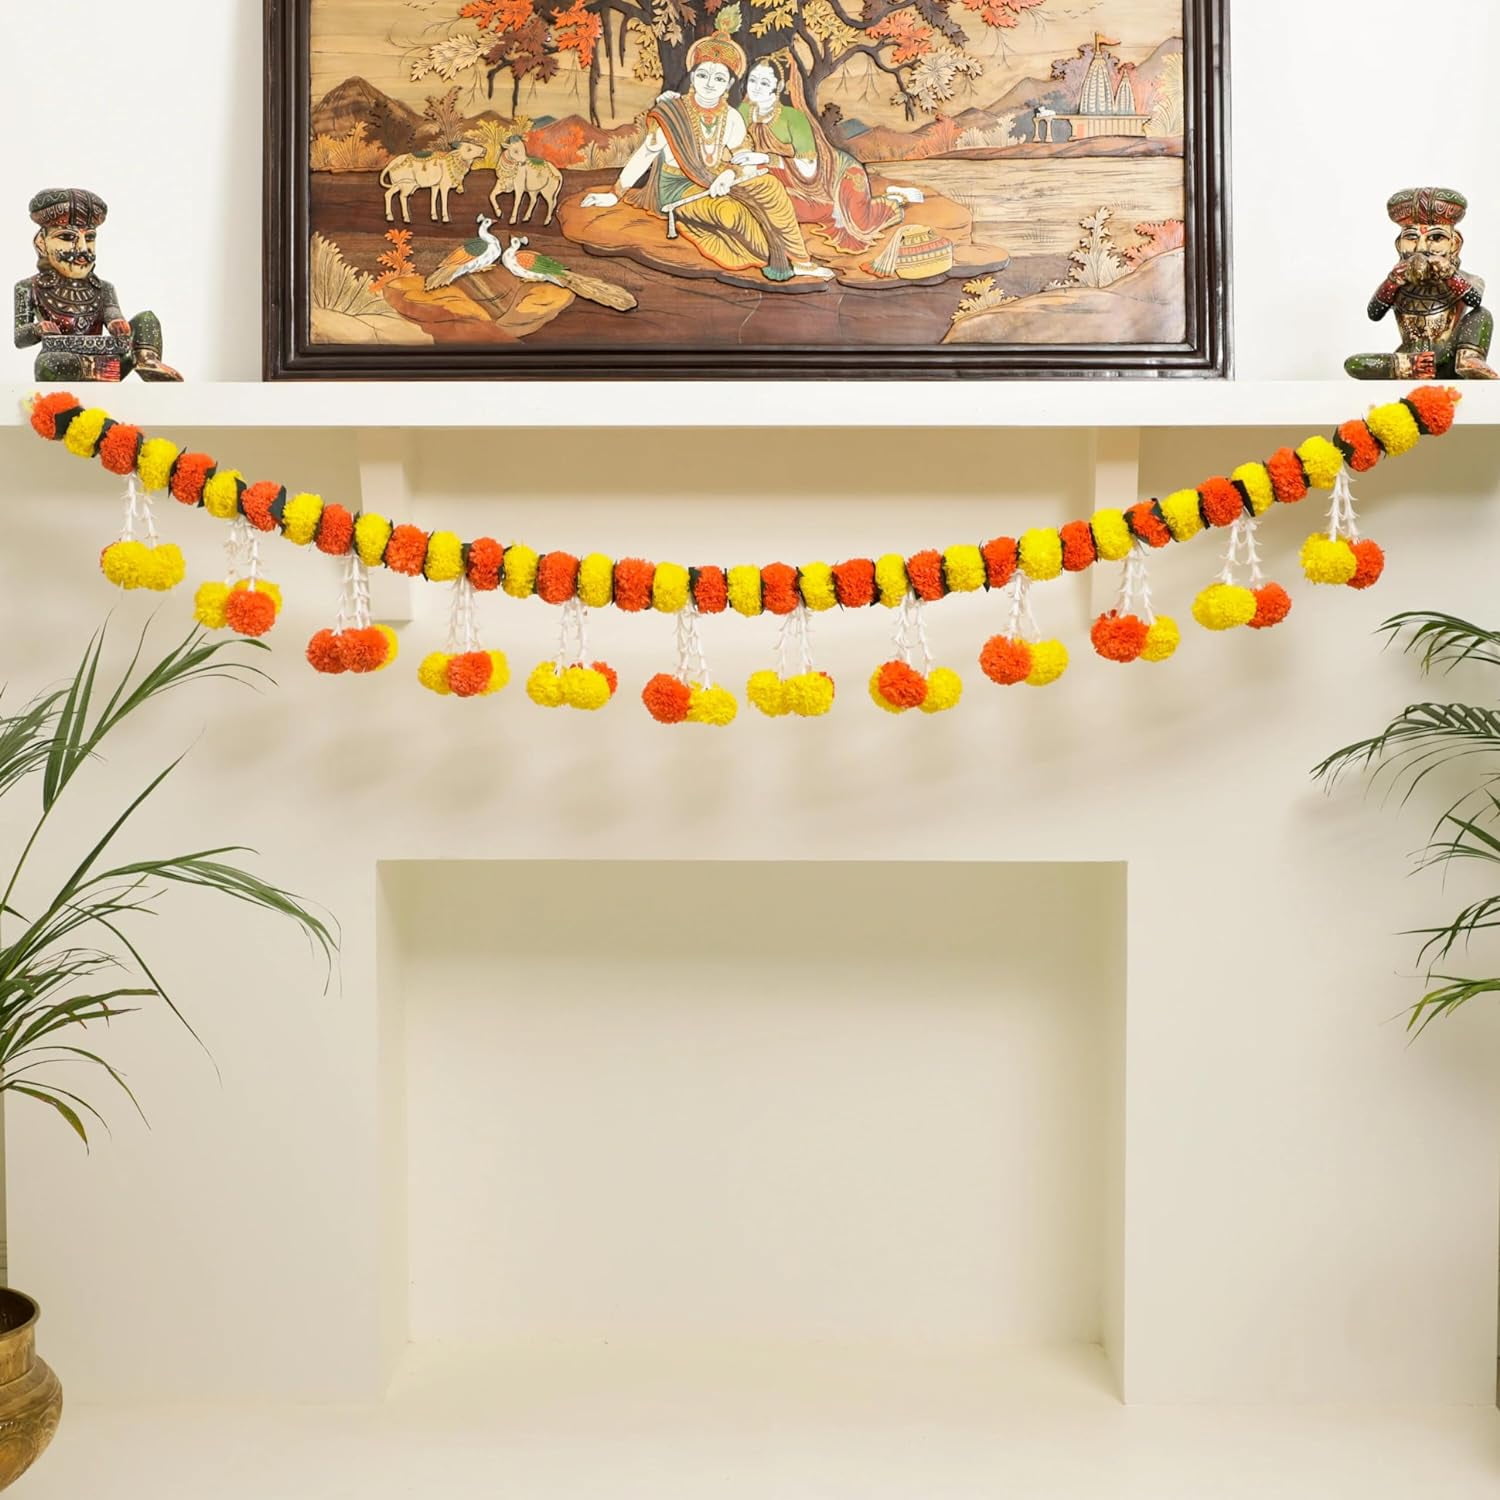 Buy Diwali Handmade Diya - 100% Natural Online in India